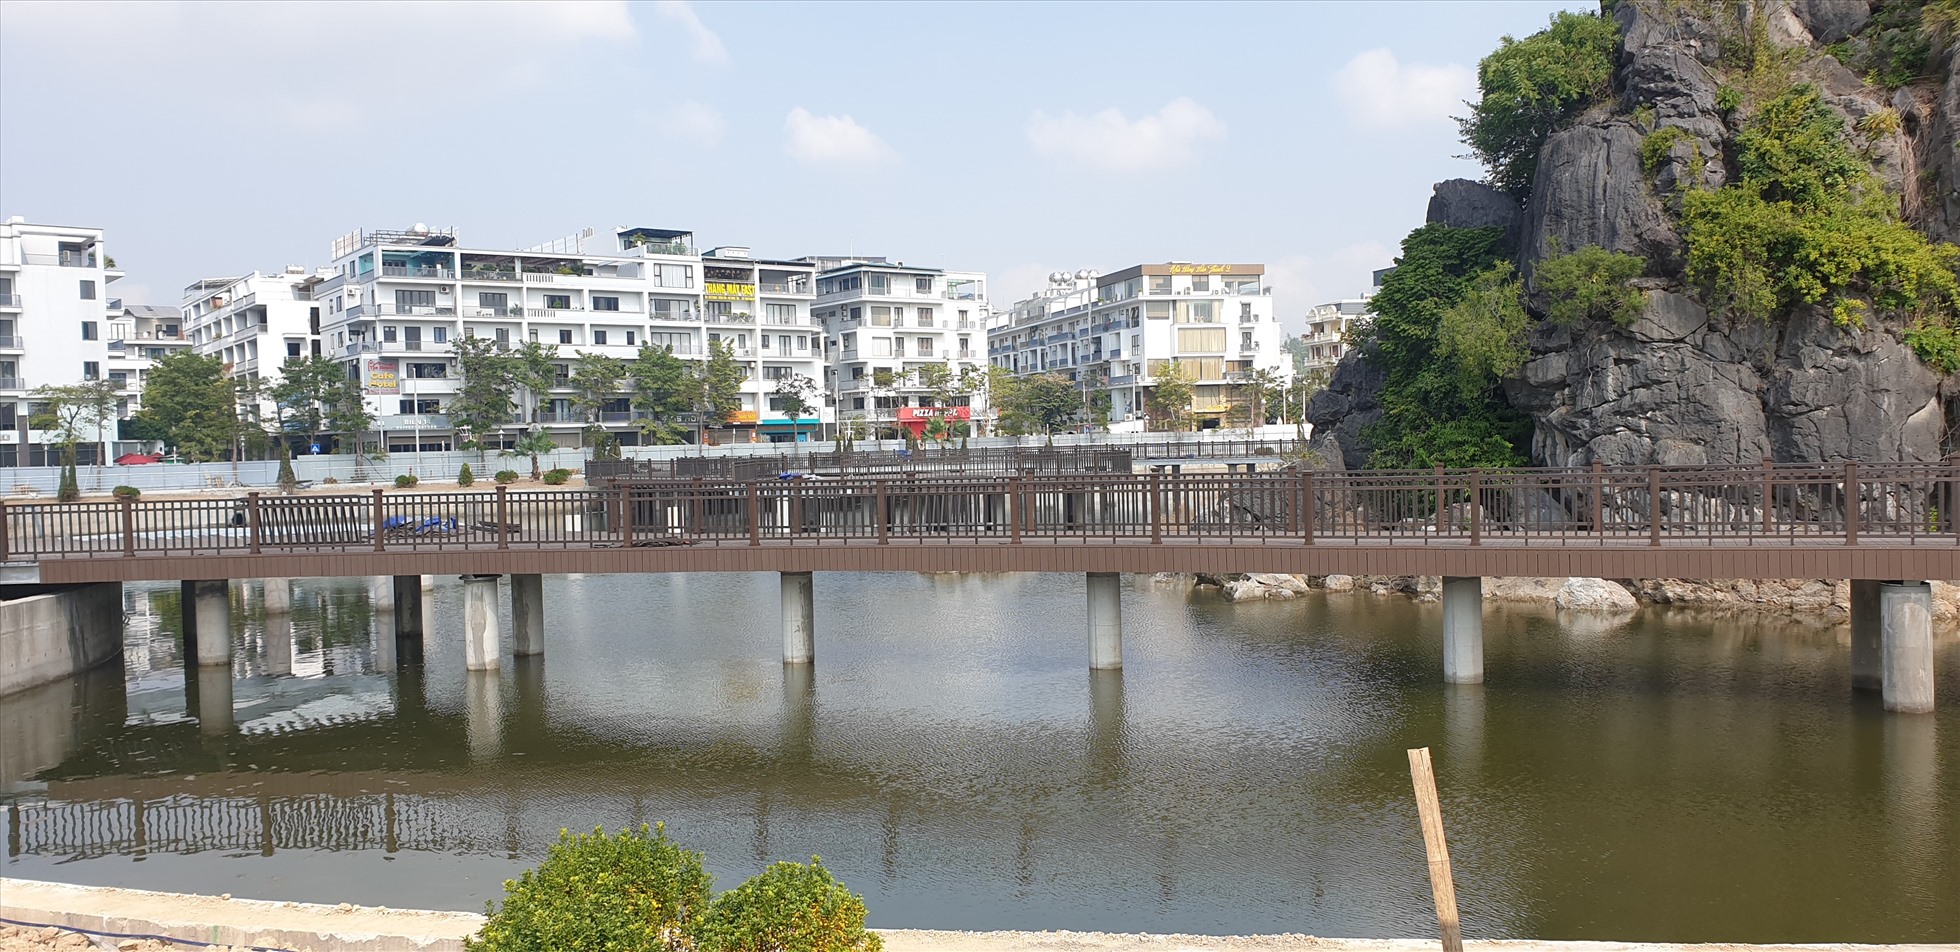 Hồ Hòn Một, nằm đối diện Cung Quy hoạch, Hội chợ và Triển lãm tỉnh Quảng Ninh, đang được đầu tư làm cầu đi bộ. Ảnh: Nguyễn Hùng